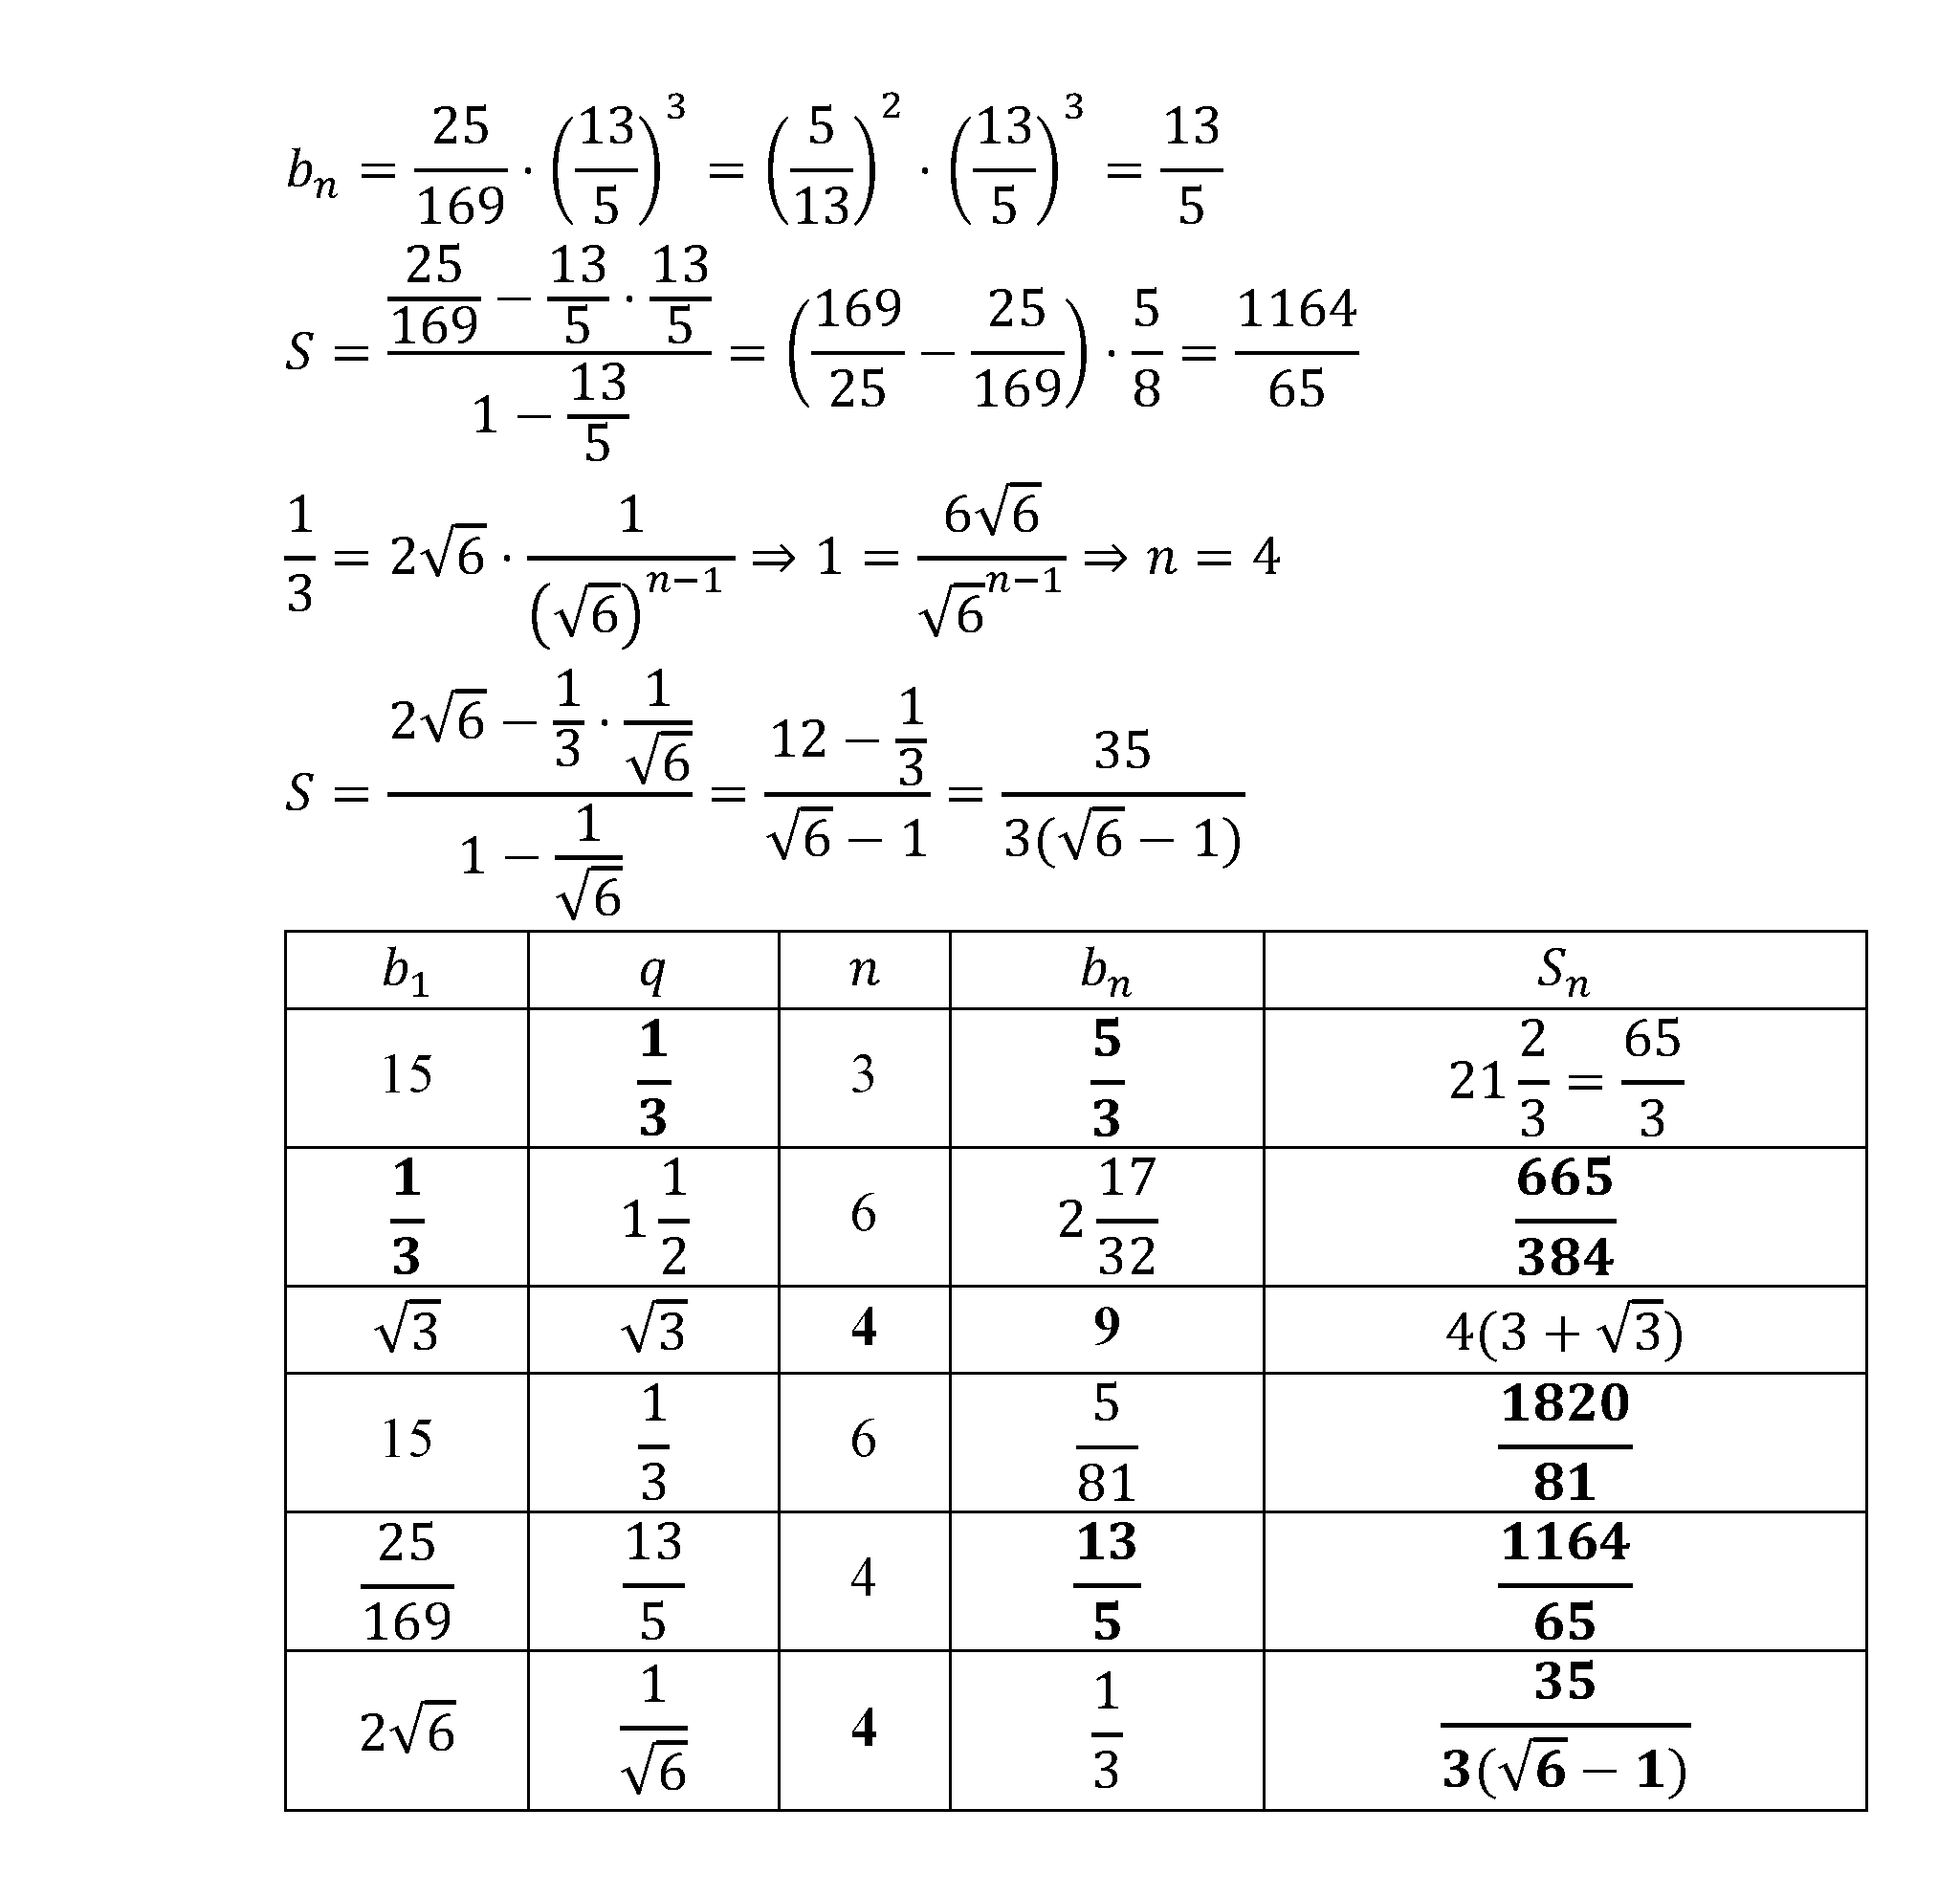 страница 113 задача 17.30 алгебра 9 класс Мордкович 2010 год